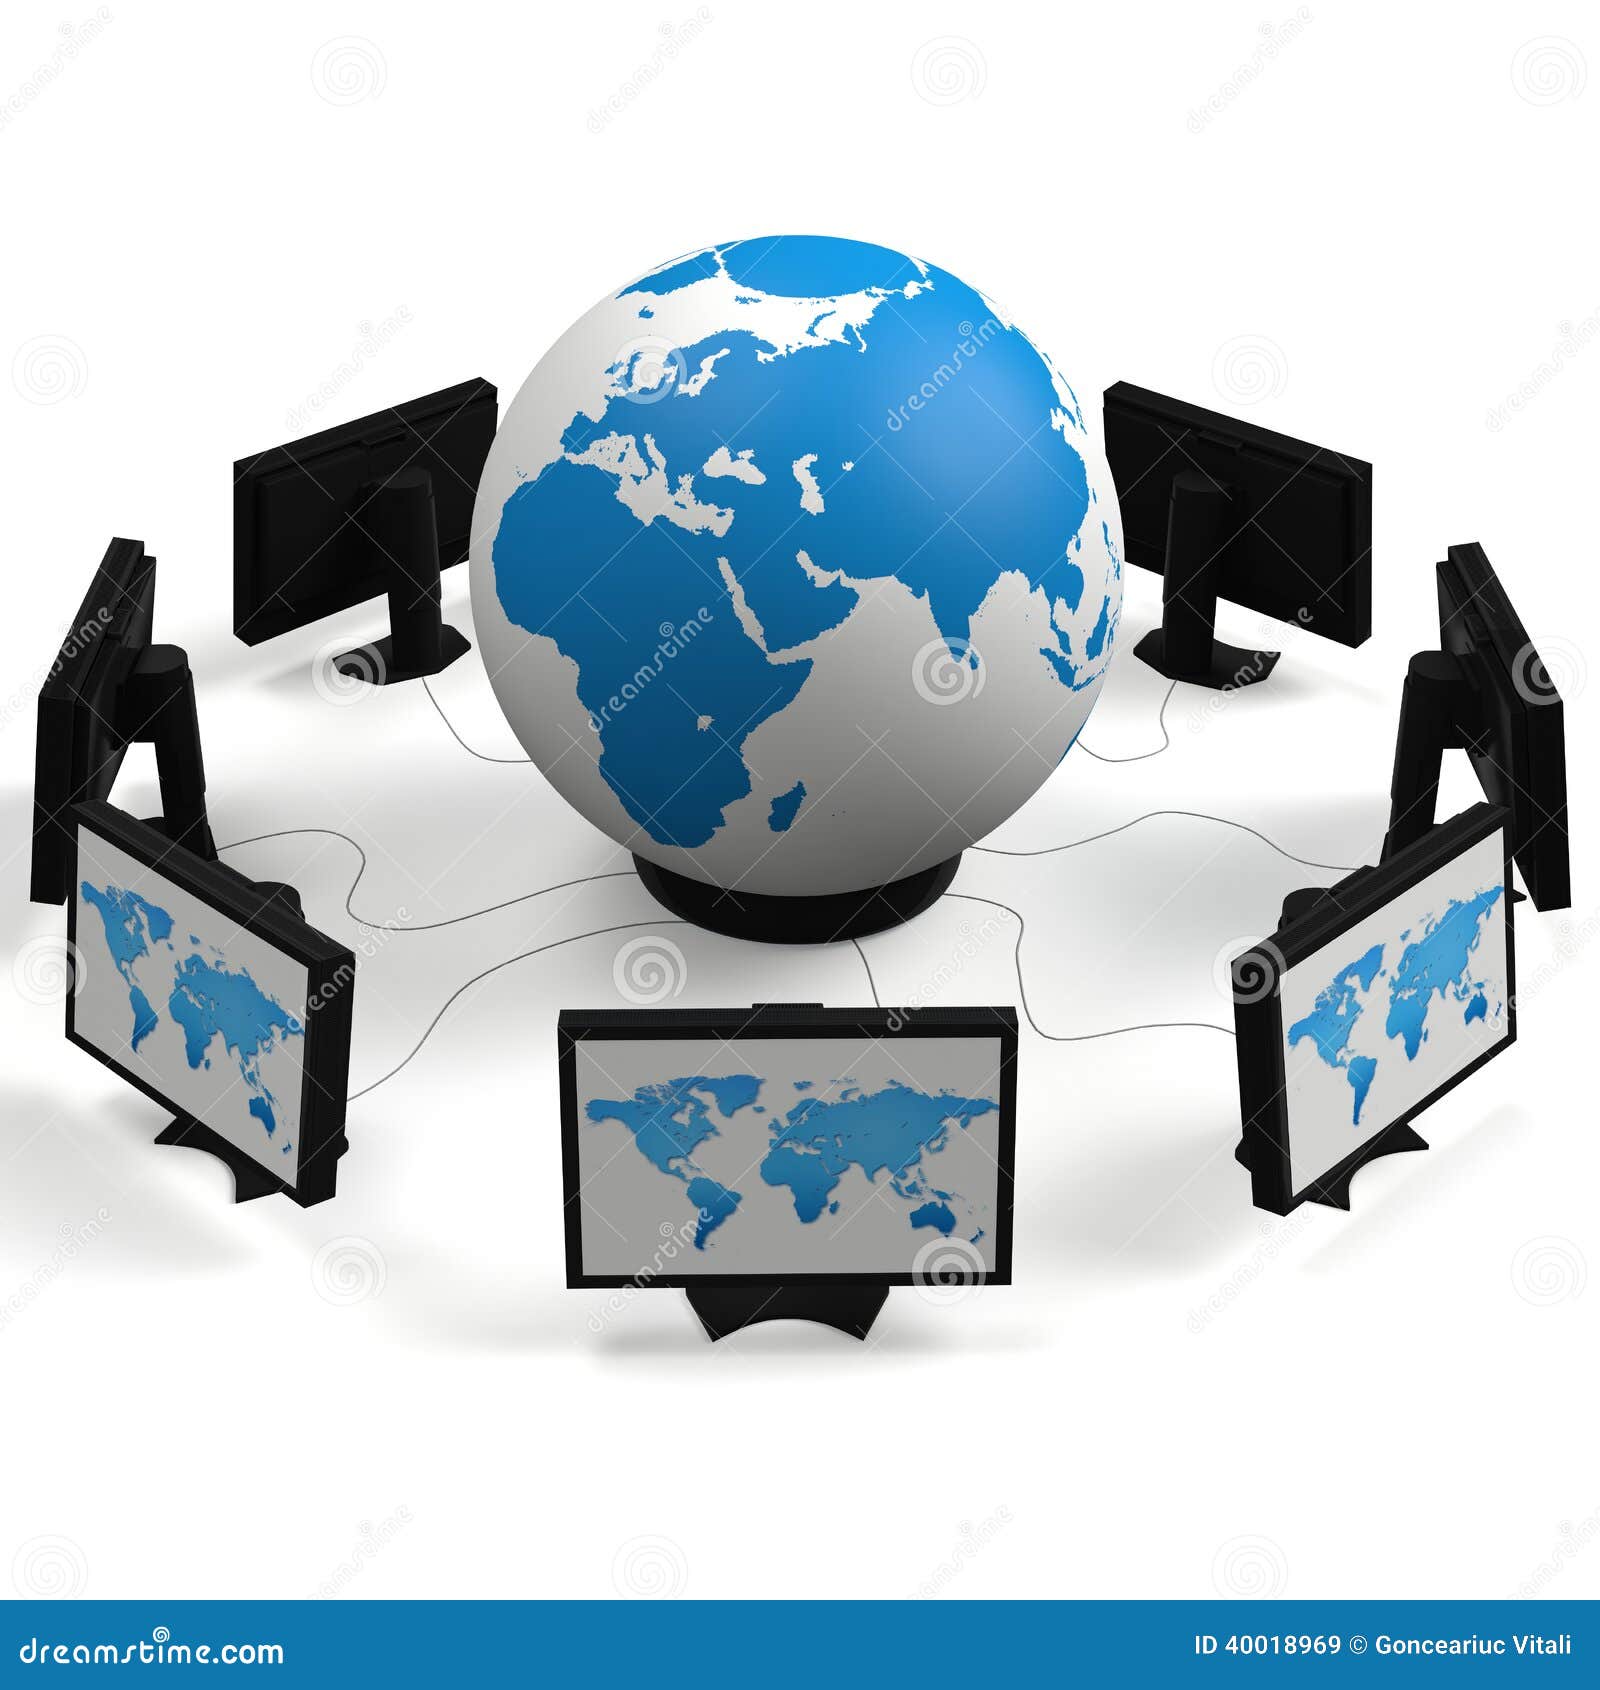 globe and monitors